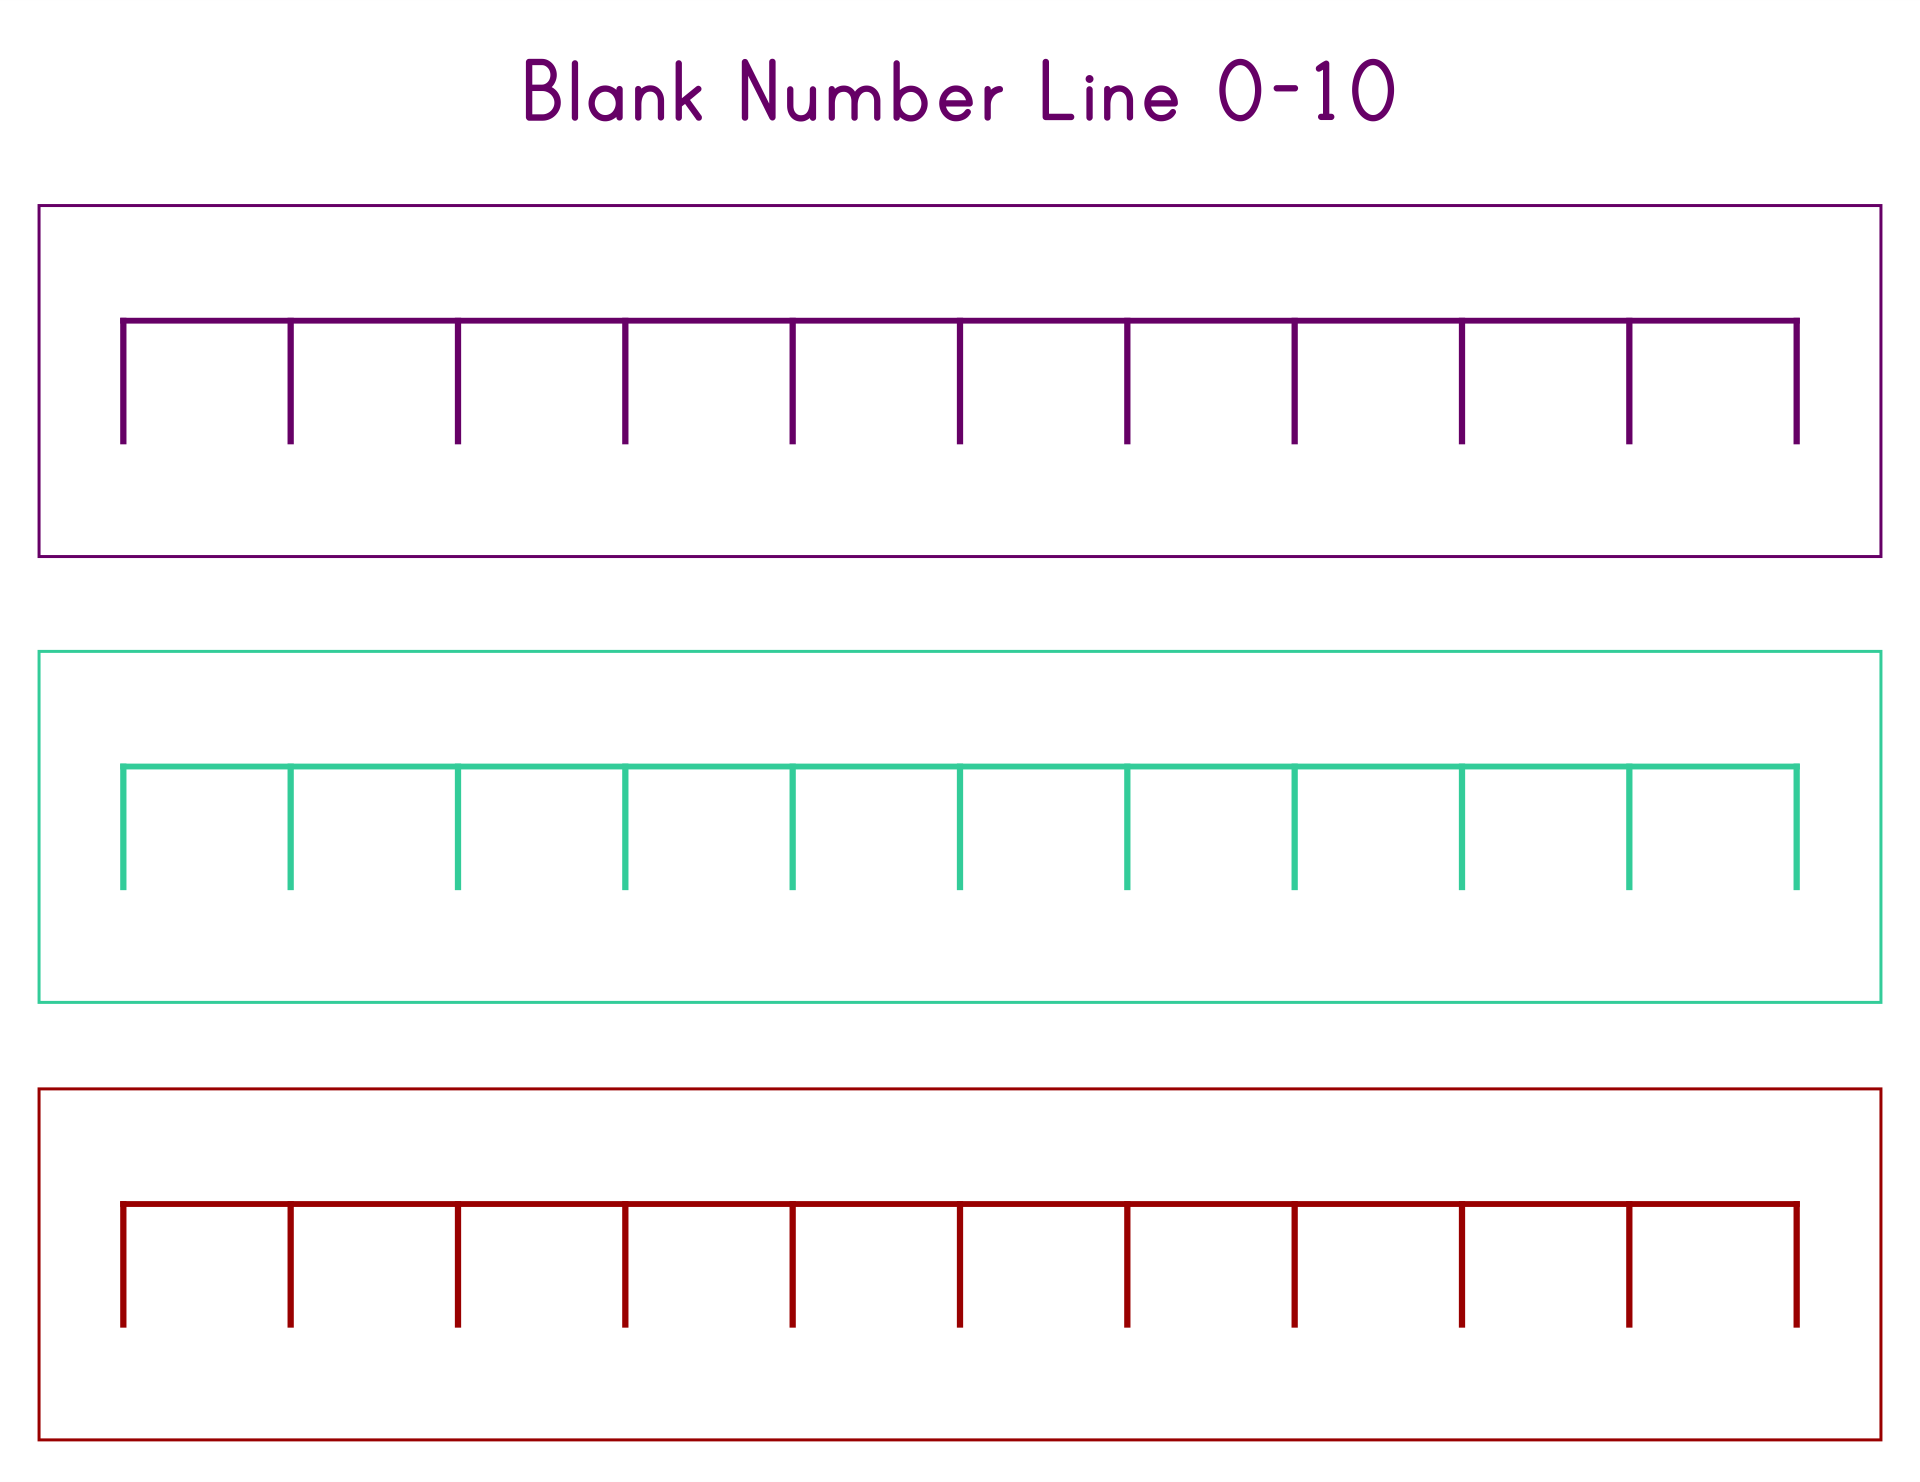 Blank Number Line 10 Intervals